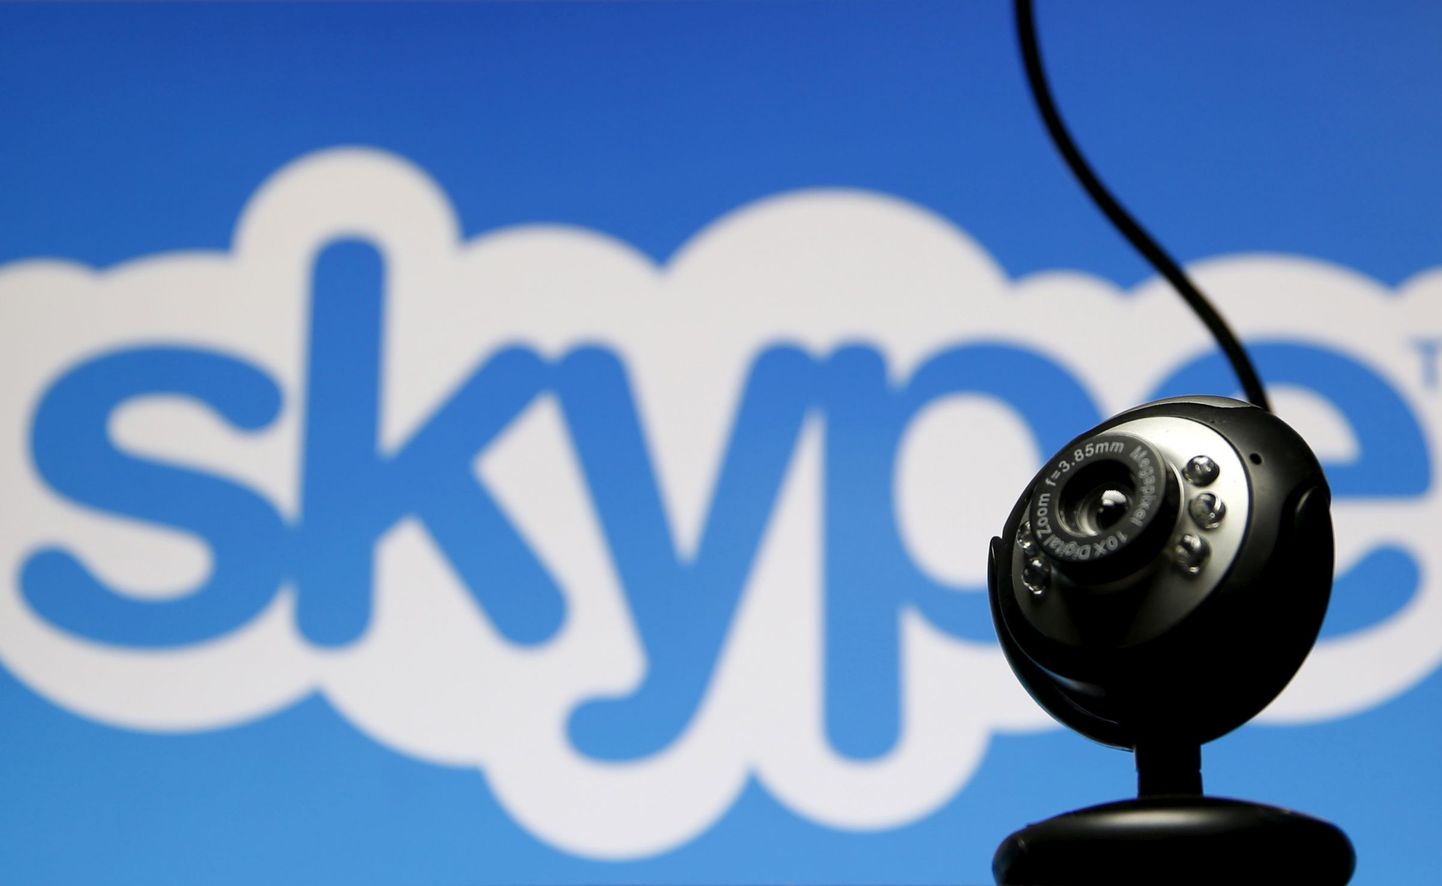 Skype on endiselt Eesti ihaldusväärseimate tööandjate seas.